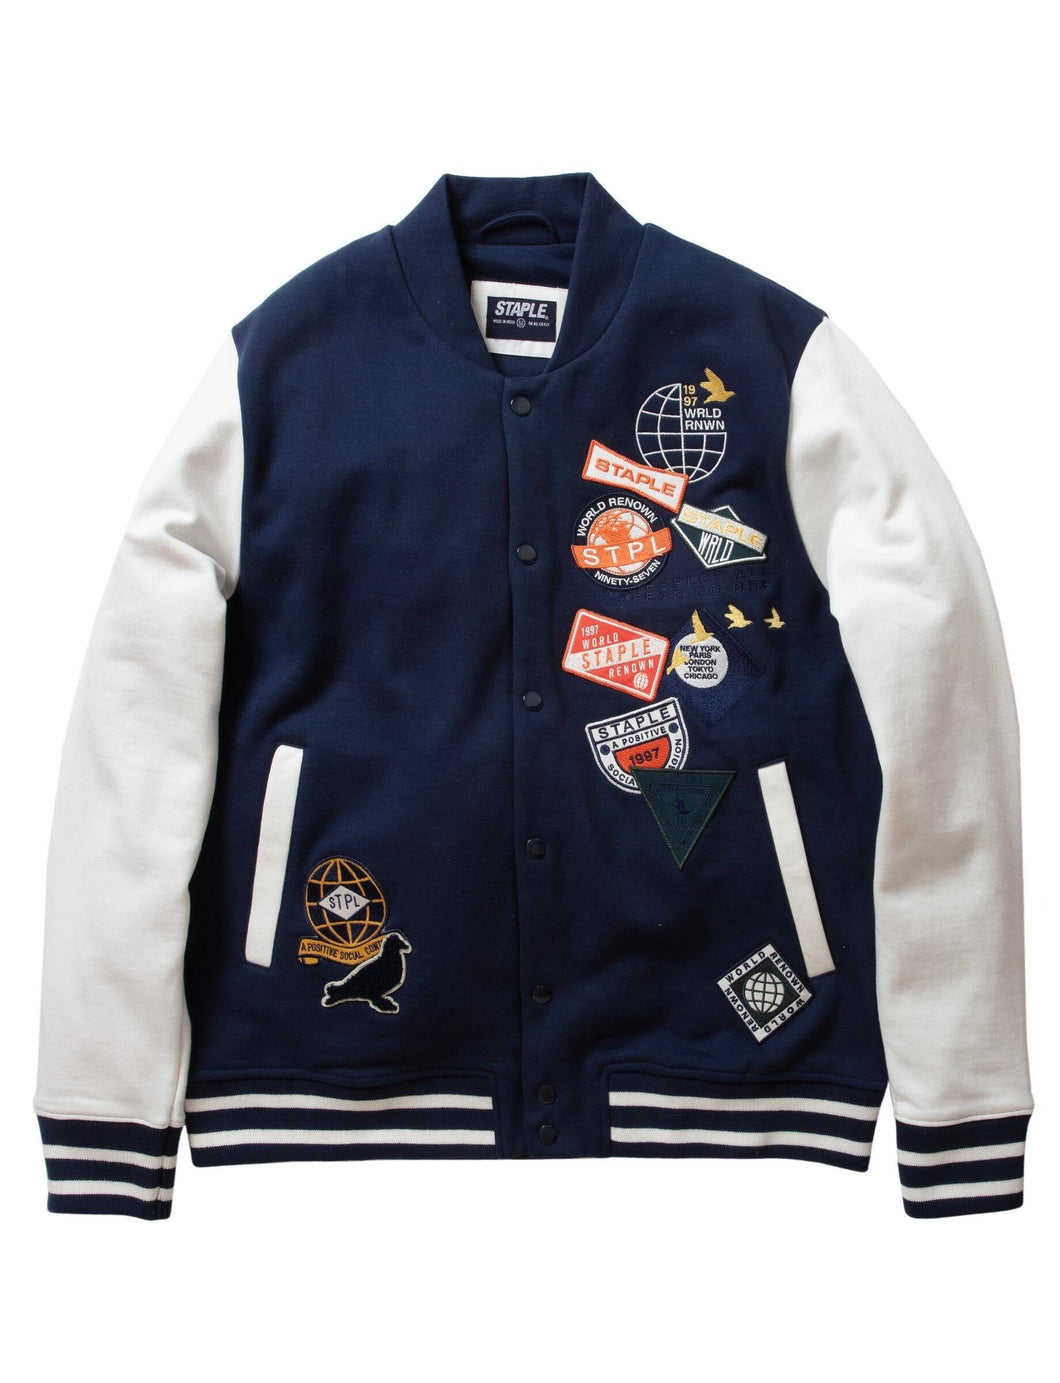 Buy Staple Midtown Fleece Baseball Jacket - Navy - Swaggerlikeme.com / Grand General Store